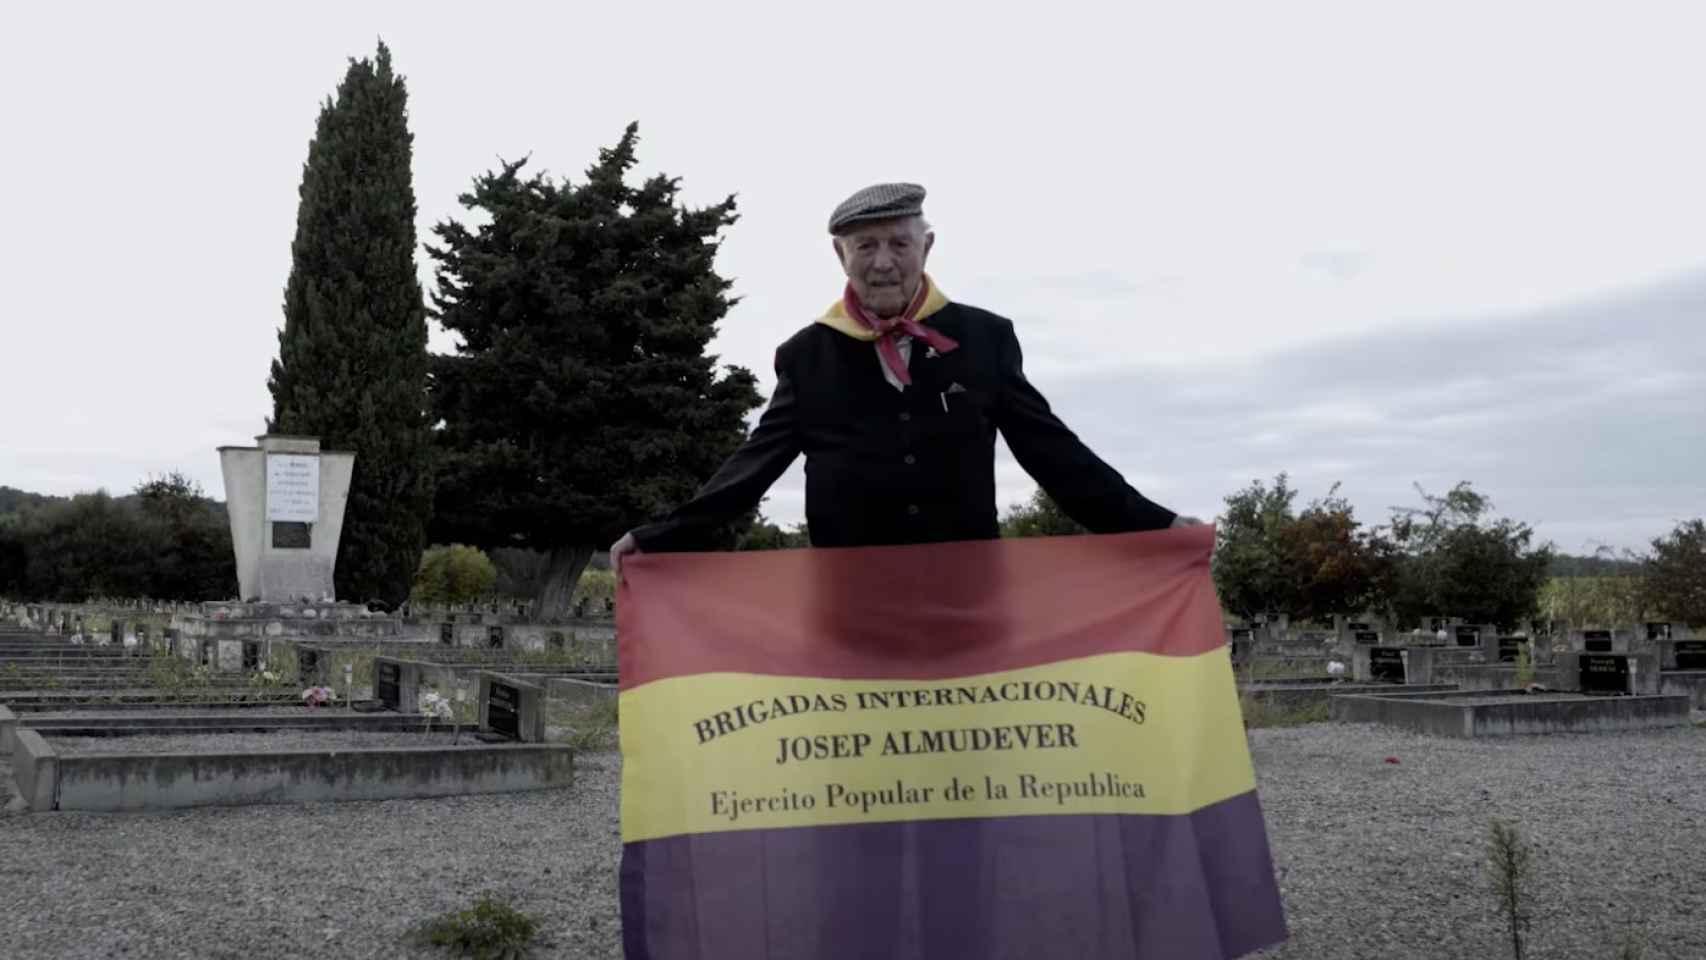 Josep Almudéver, el último brigadista internacional que luchó en la Guerra Civil.